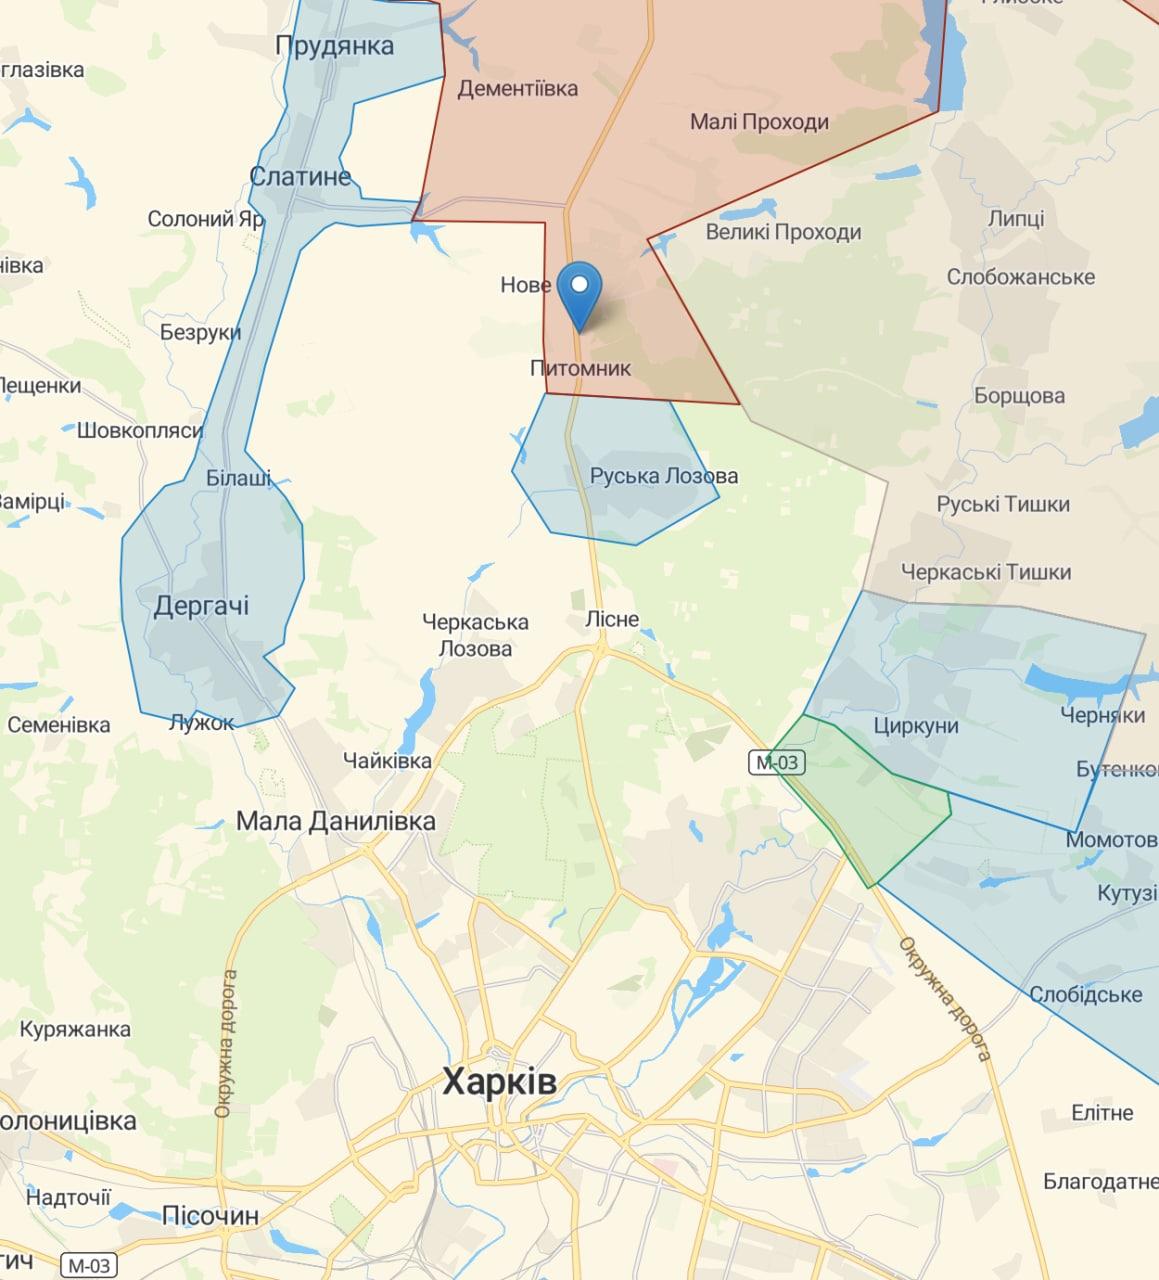  localitatea pepinieră a fost eliberată în regiunea Kharkiv